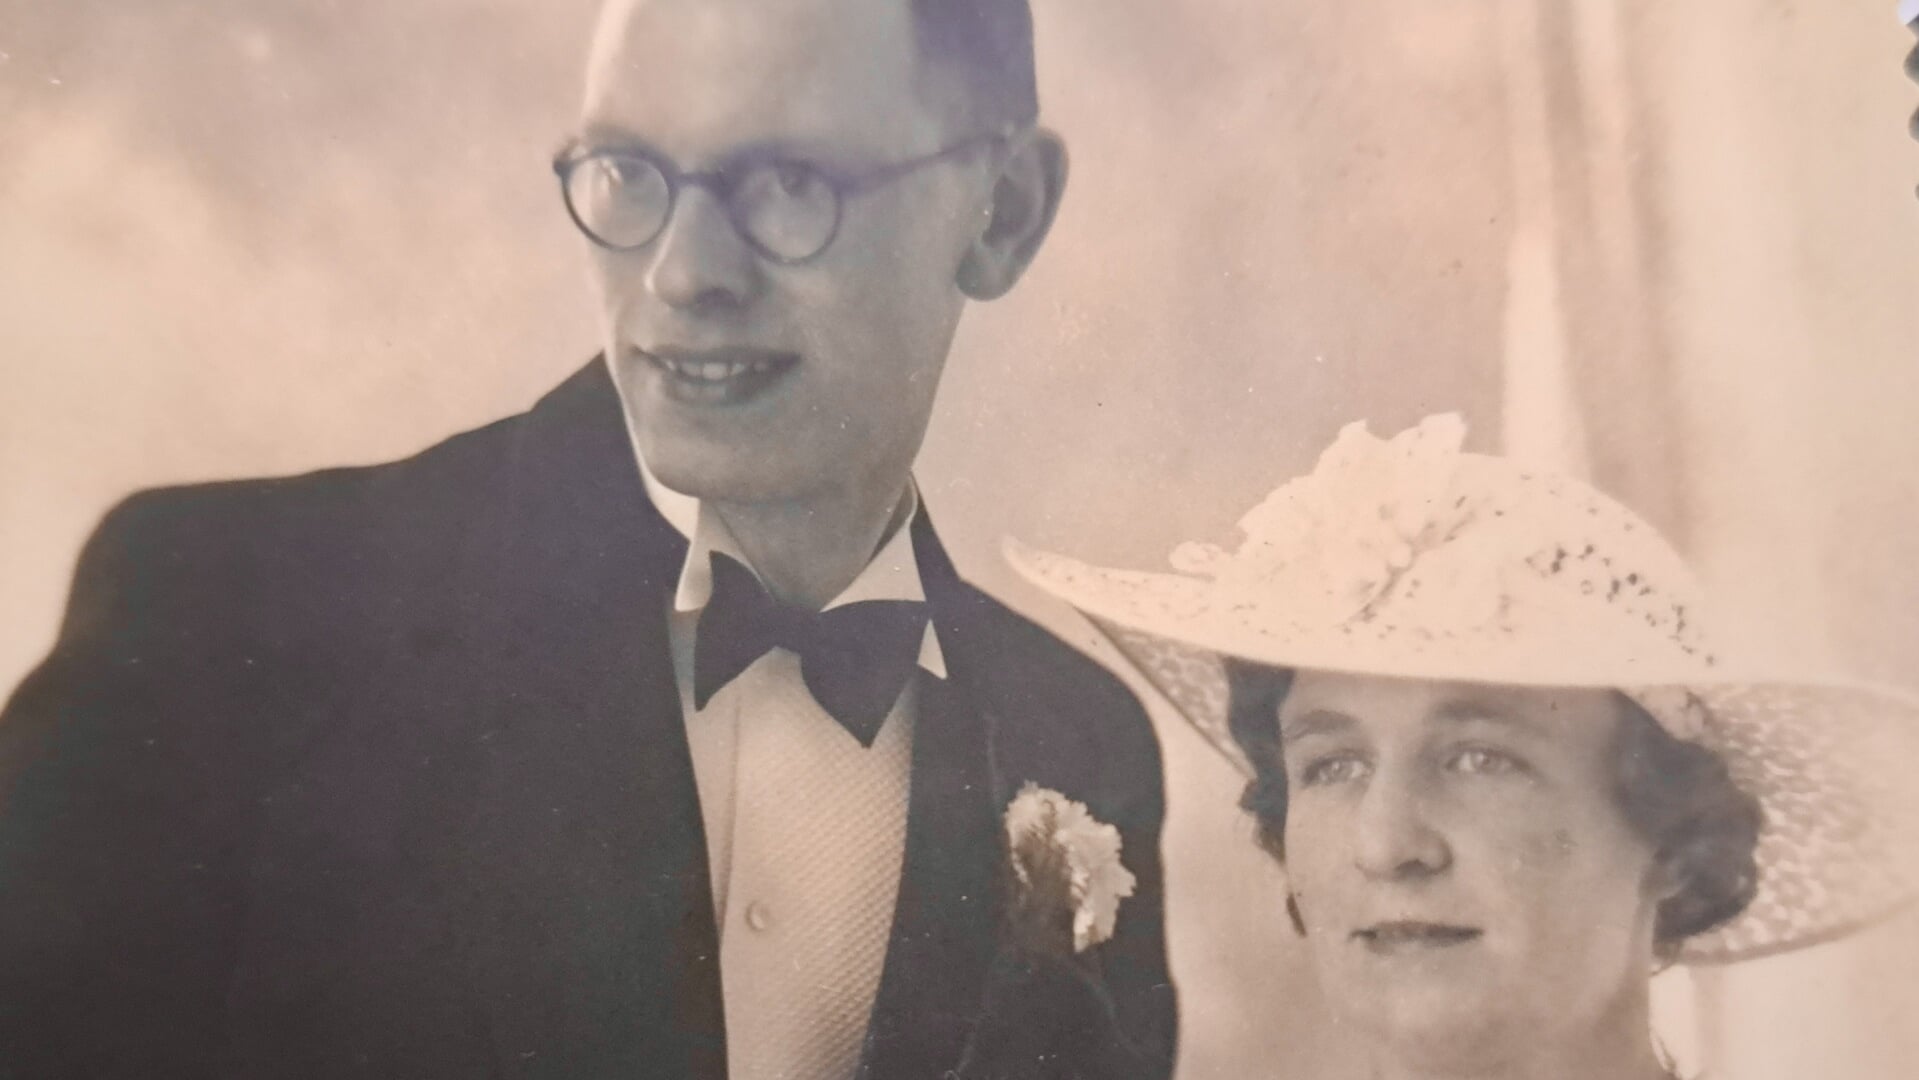 Nicolaas Noordam en Corrie Roovers leerden elkaar kennen in een weeshuis in Den Haag. Ze trouwden op 18 mei 1937.